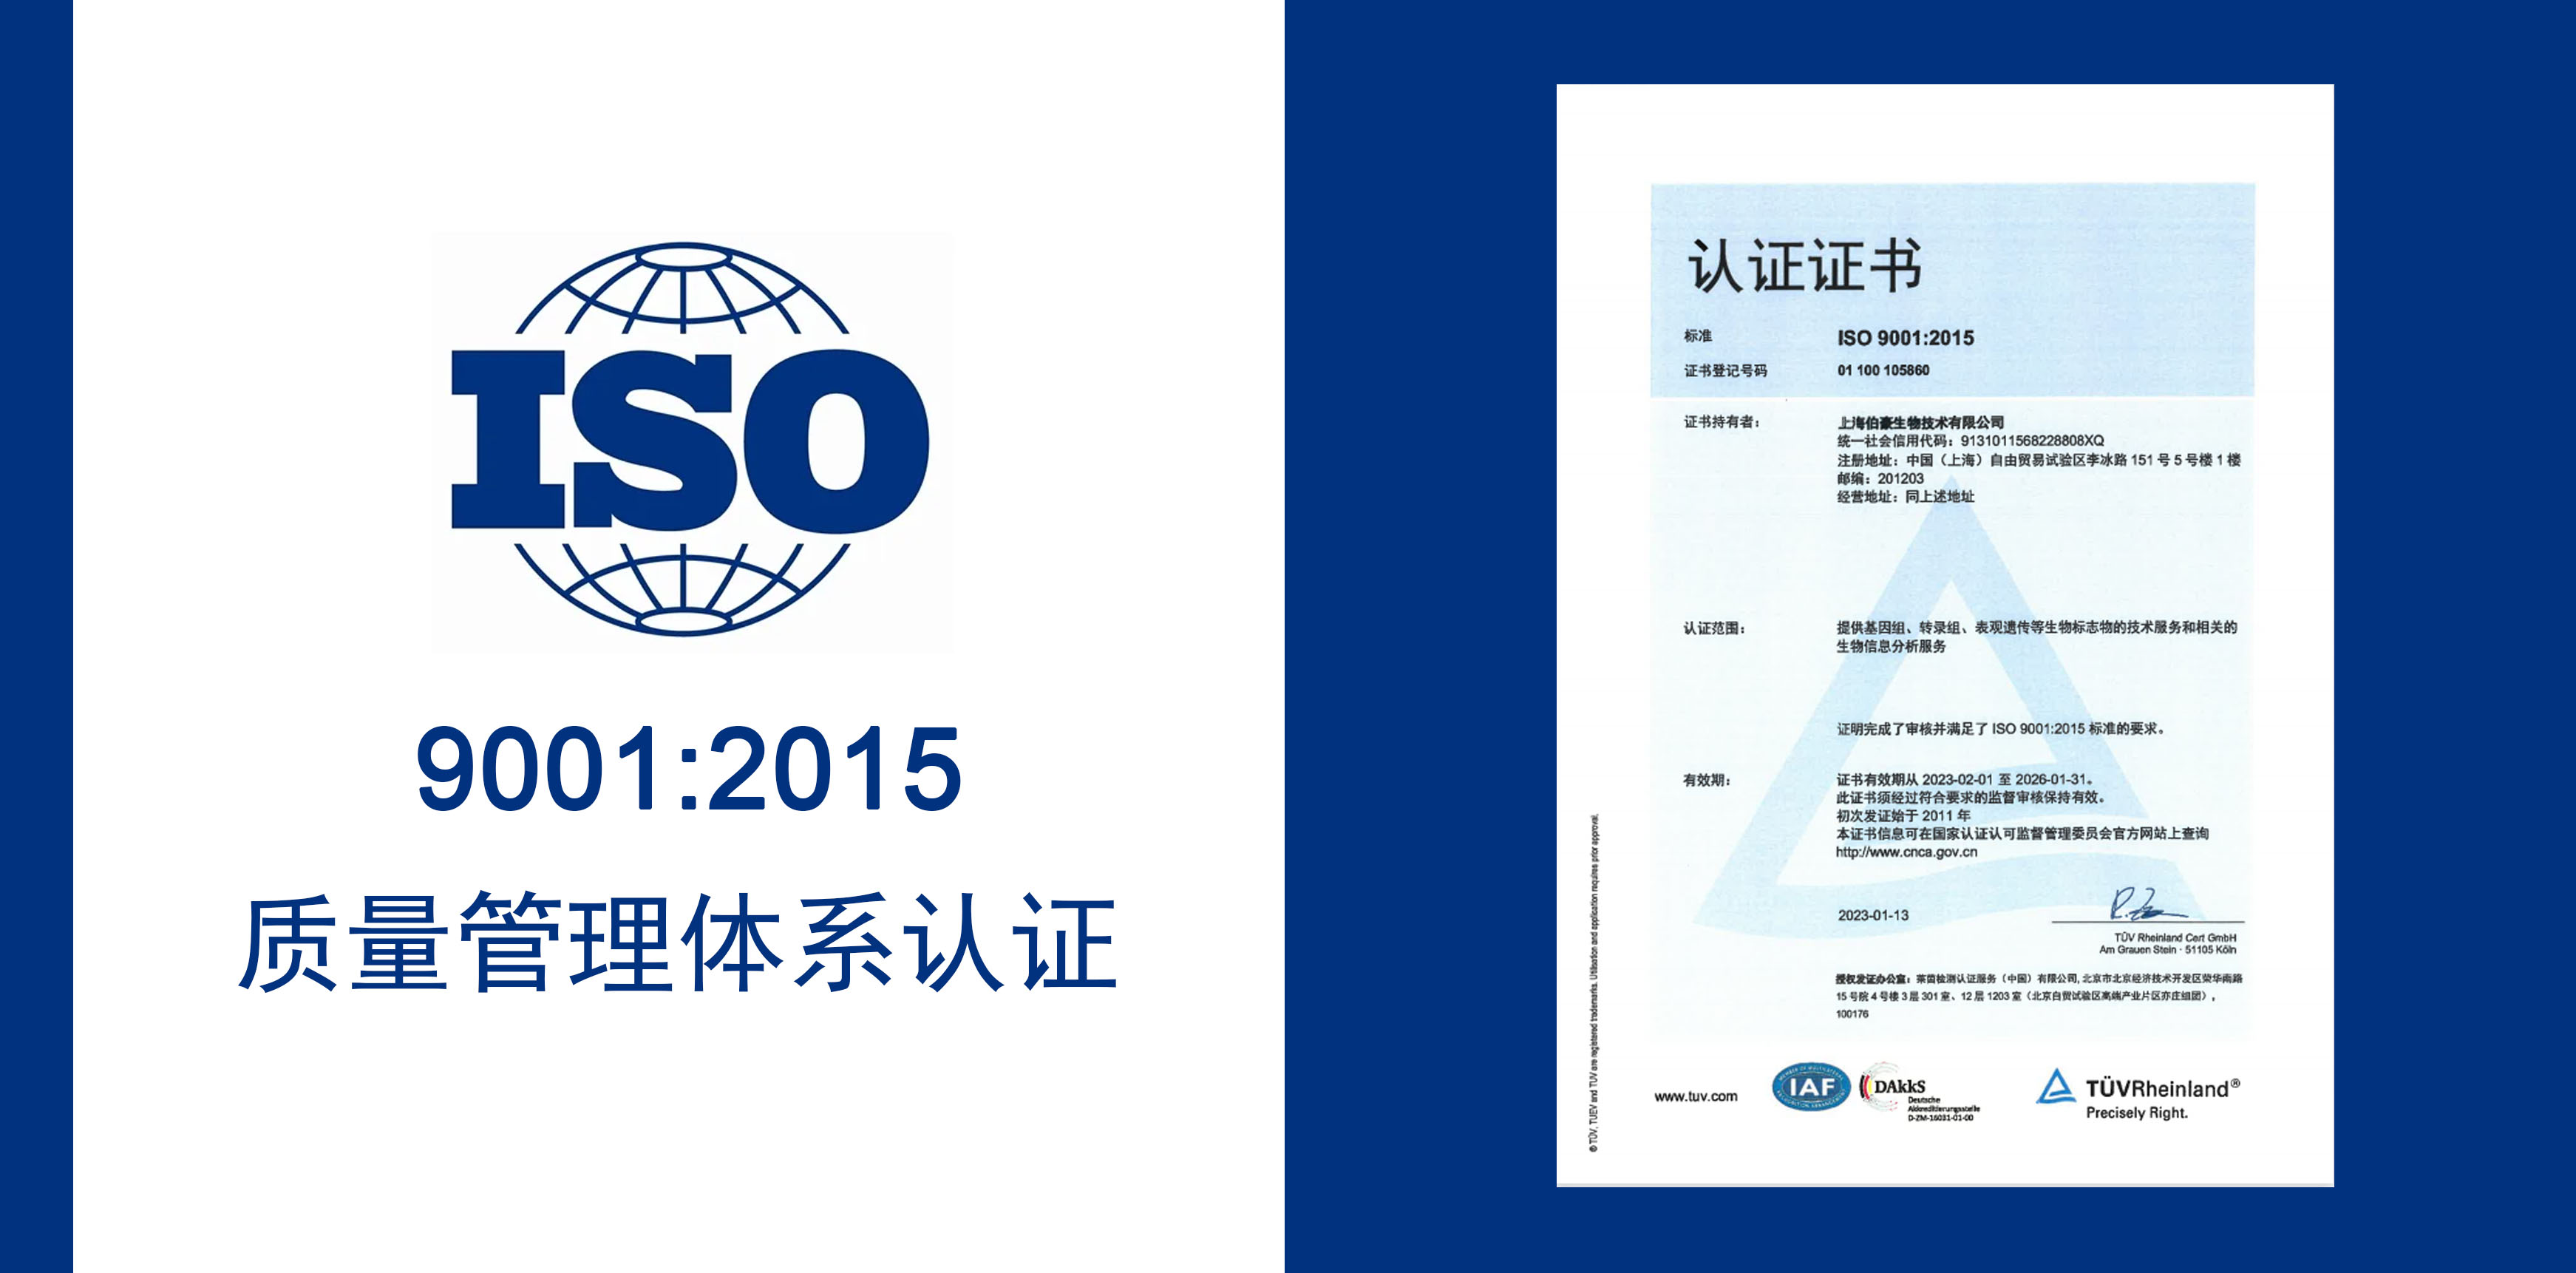 太阳成集团tyc138获得 IOS9001 质量服务体系认证